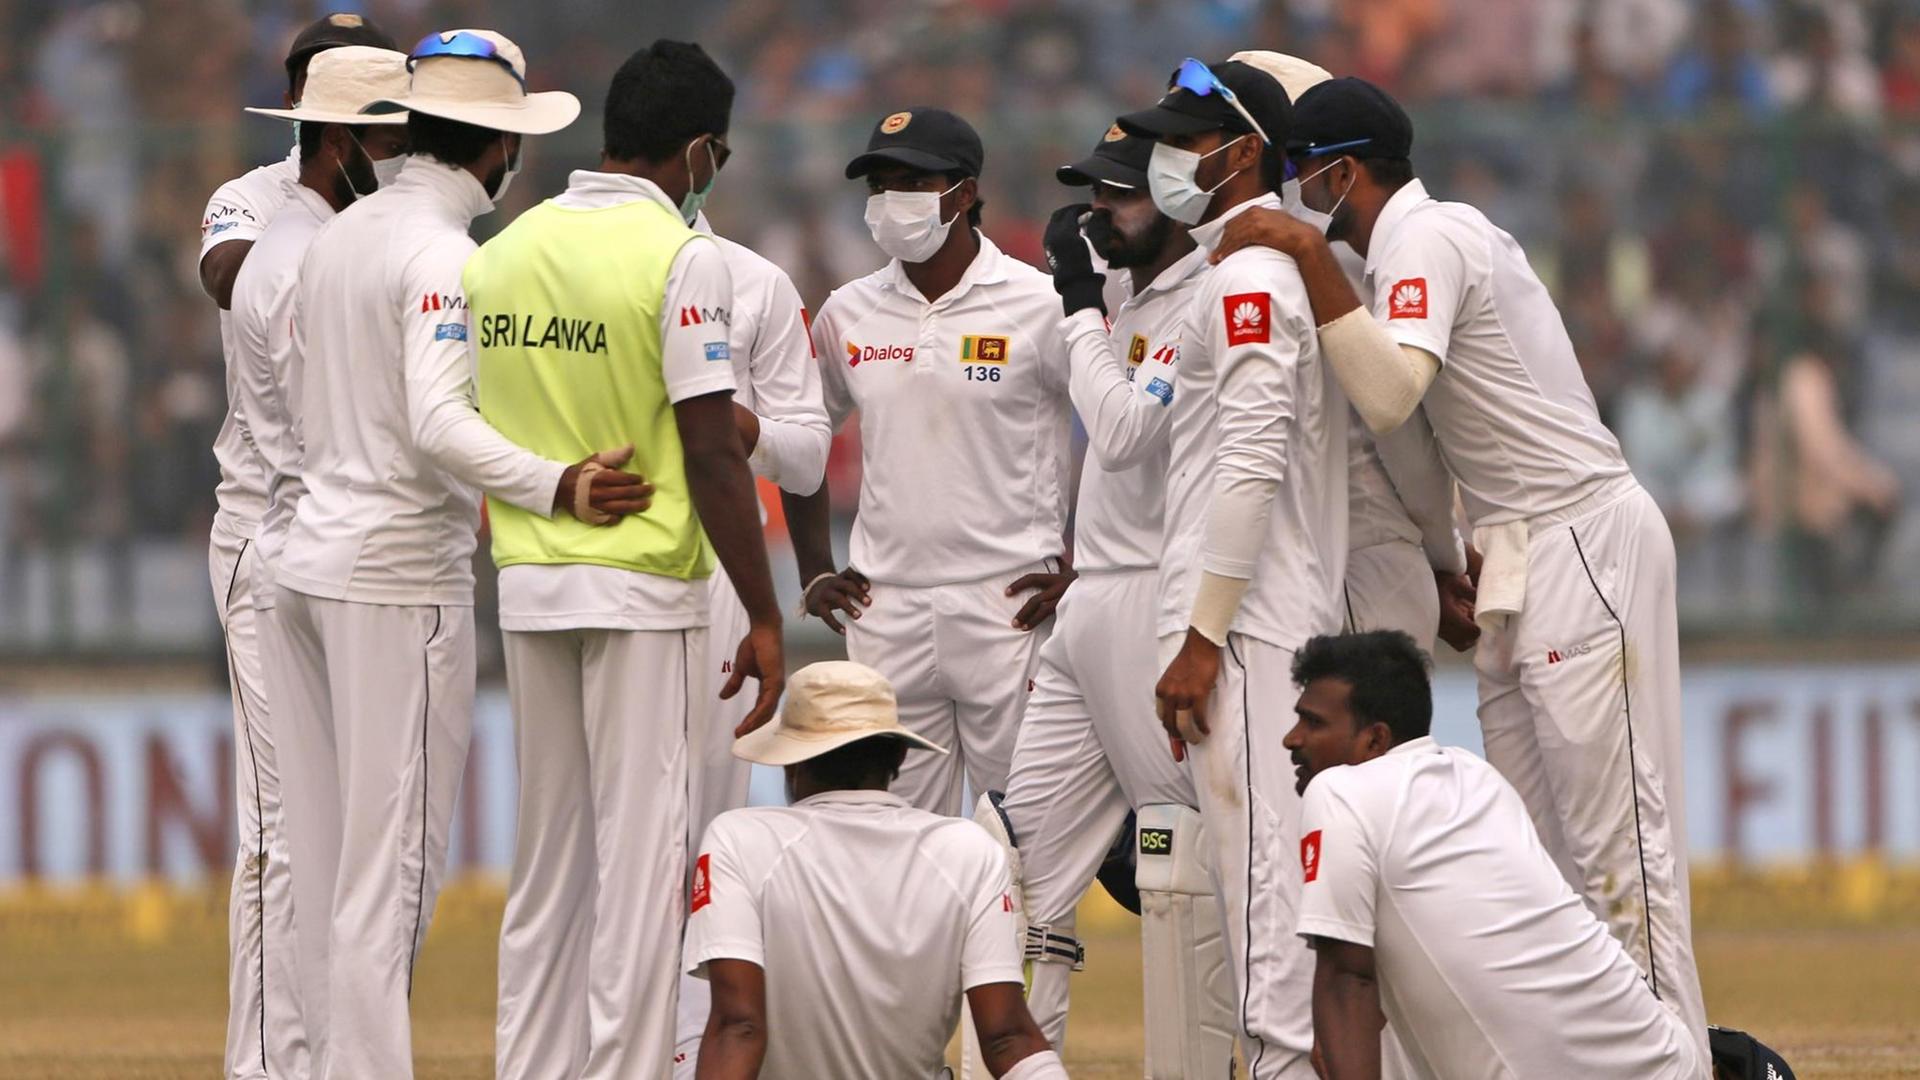 Cricket-Nationalspieler von Sri Lanka tragen beim Testspiel gegen Indien Schutzmasken wegen des Smogs in Neu-Delhi.